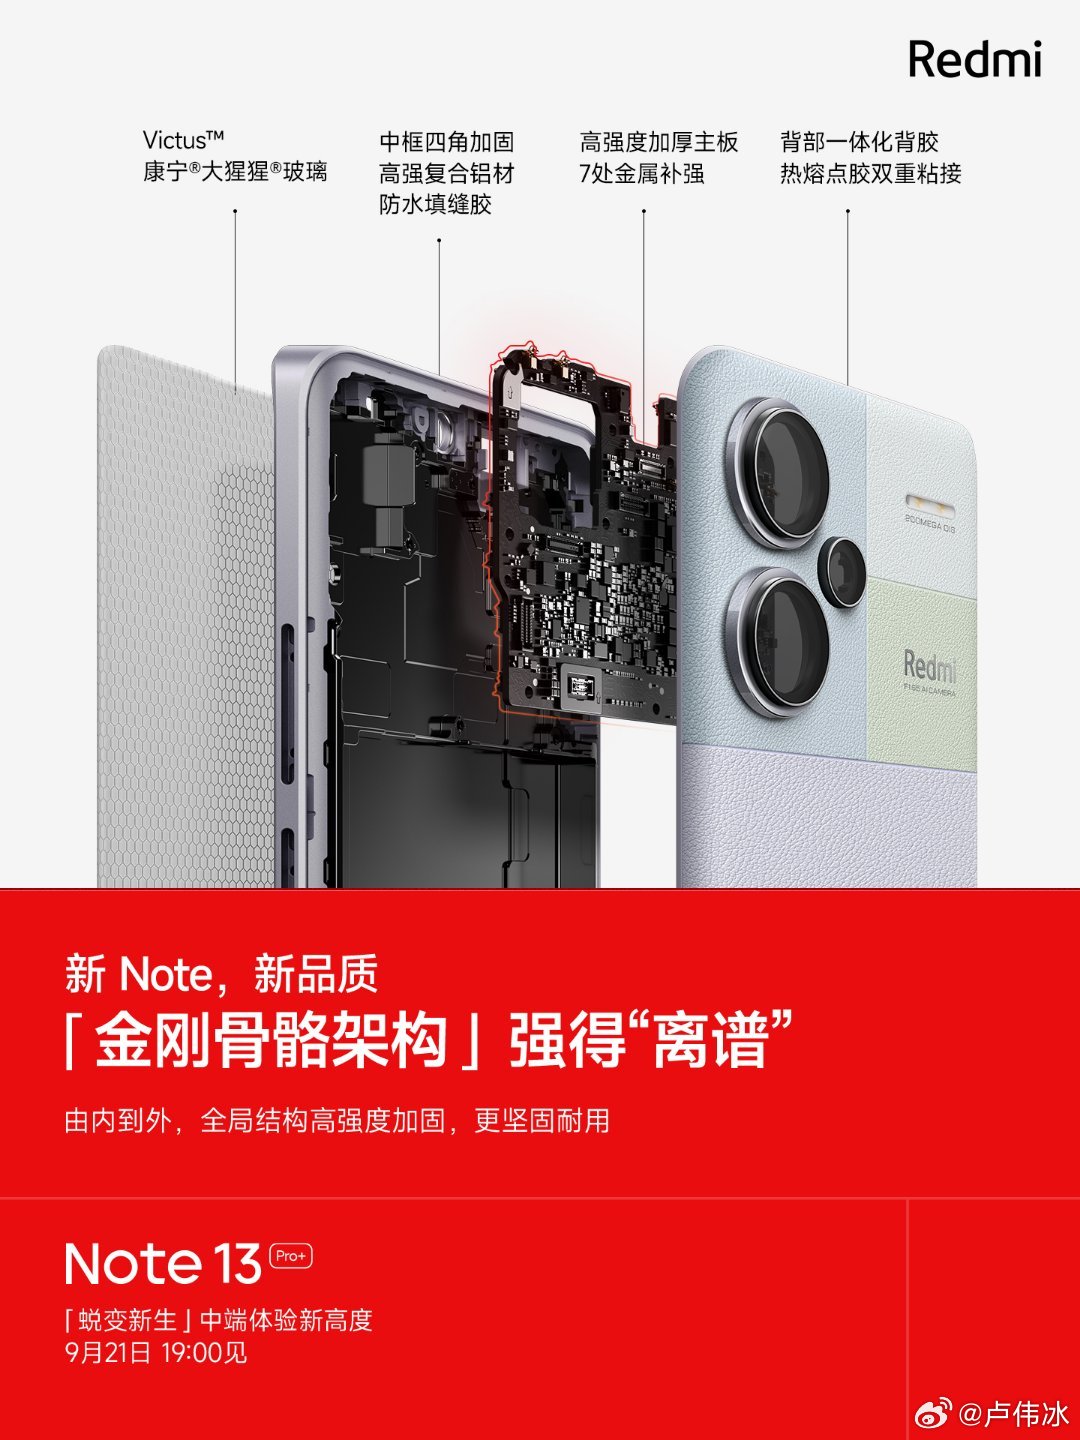 Redmi Note 13 Pro+ обещают усиленный корпус и защиту IP68